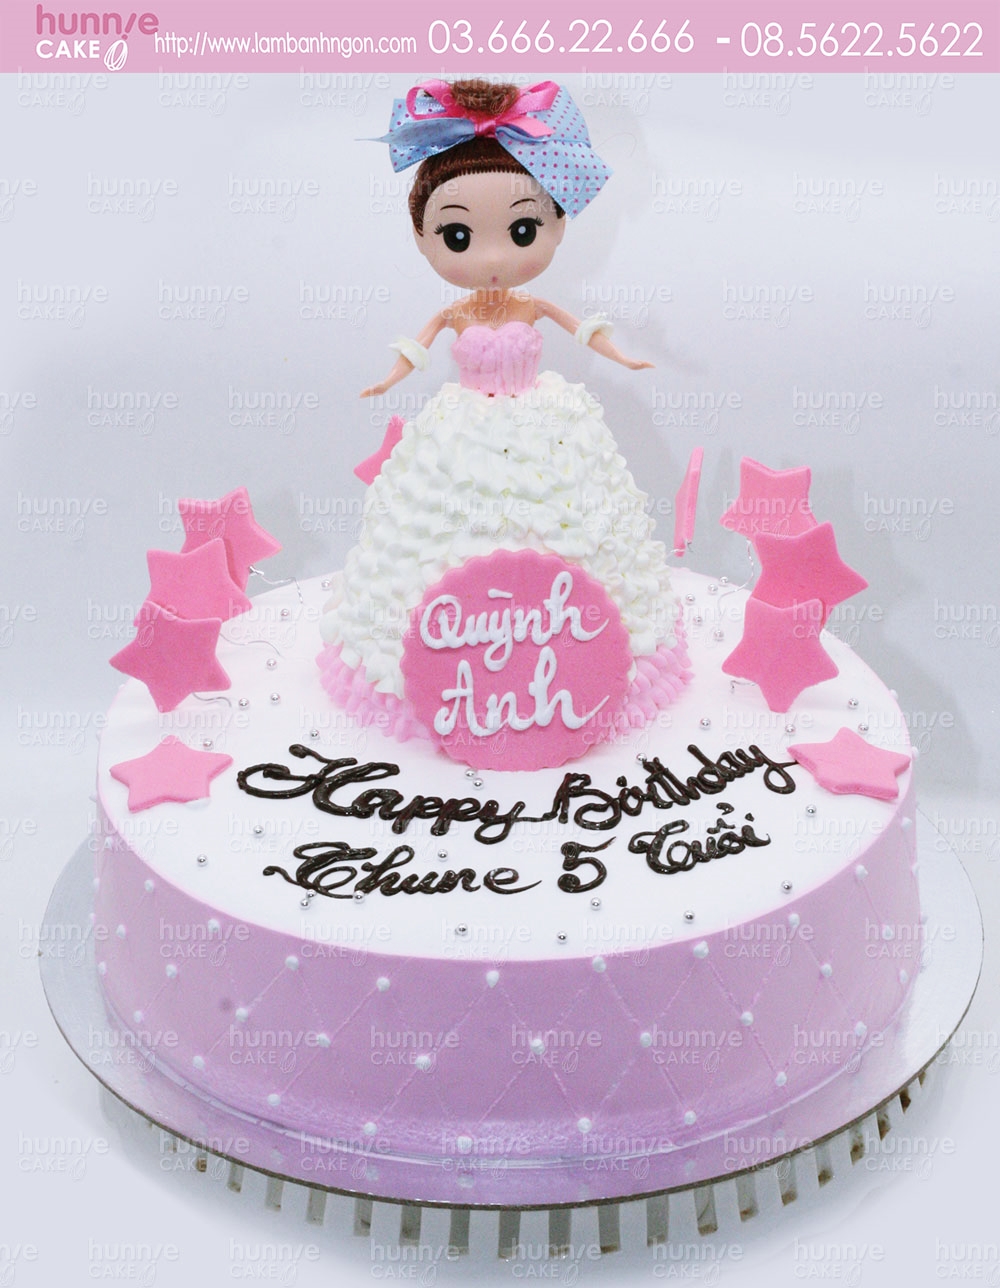 Trang trí bánh sinh nhật búp bê barbie cách điệu xinh xắn  YouTube